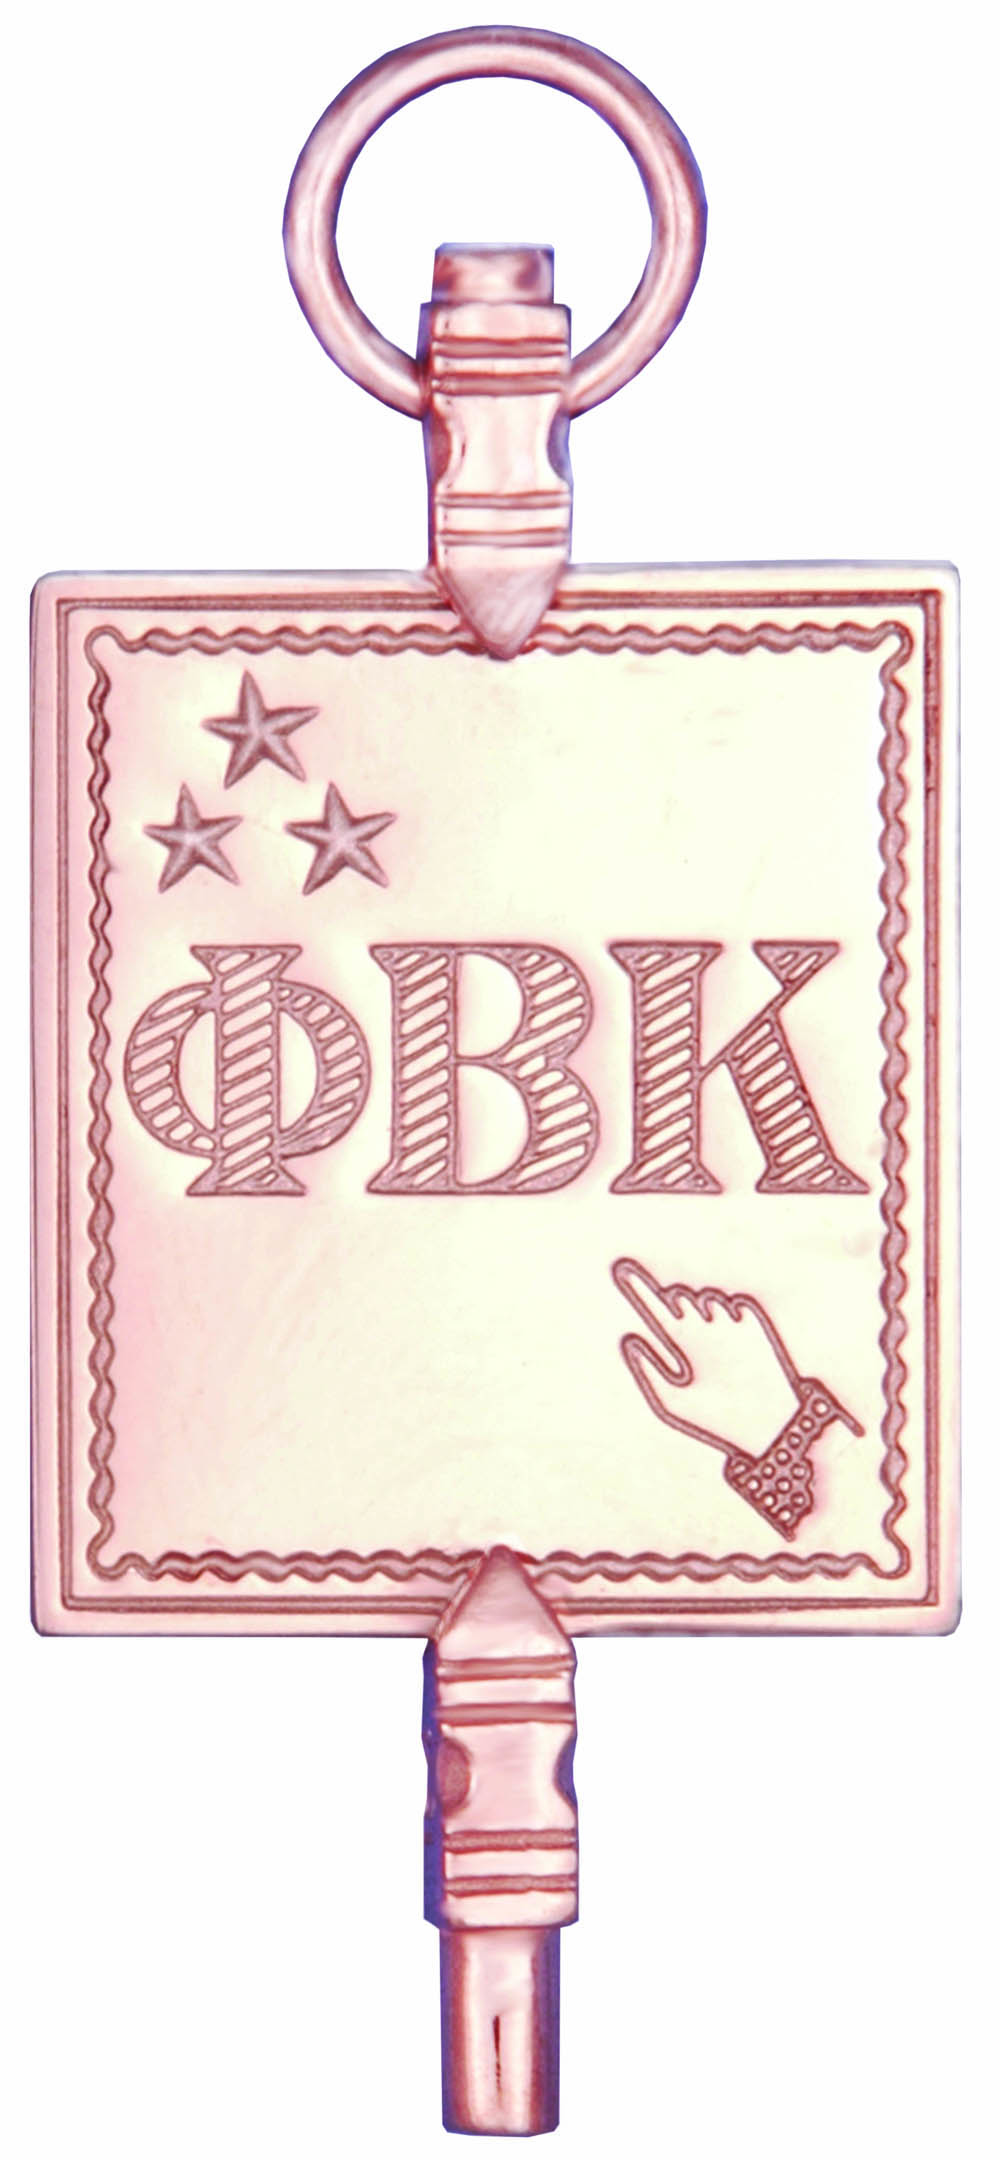 PBK key